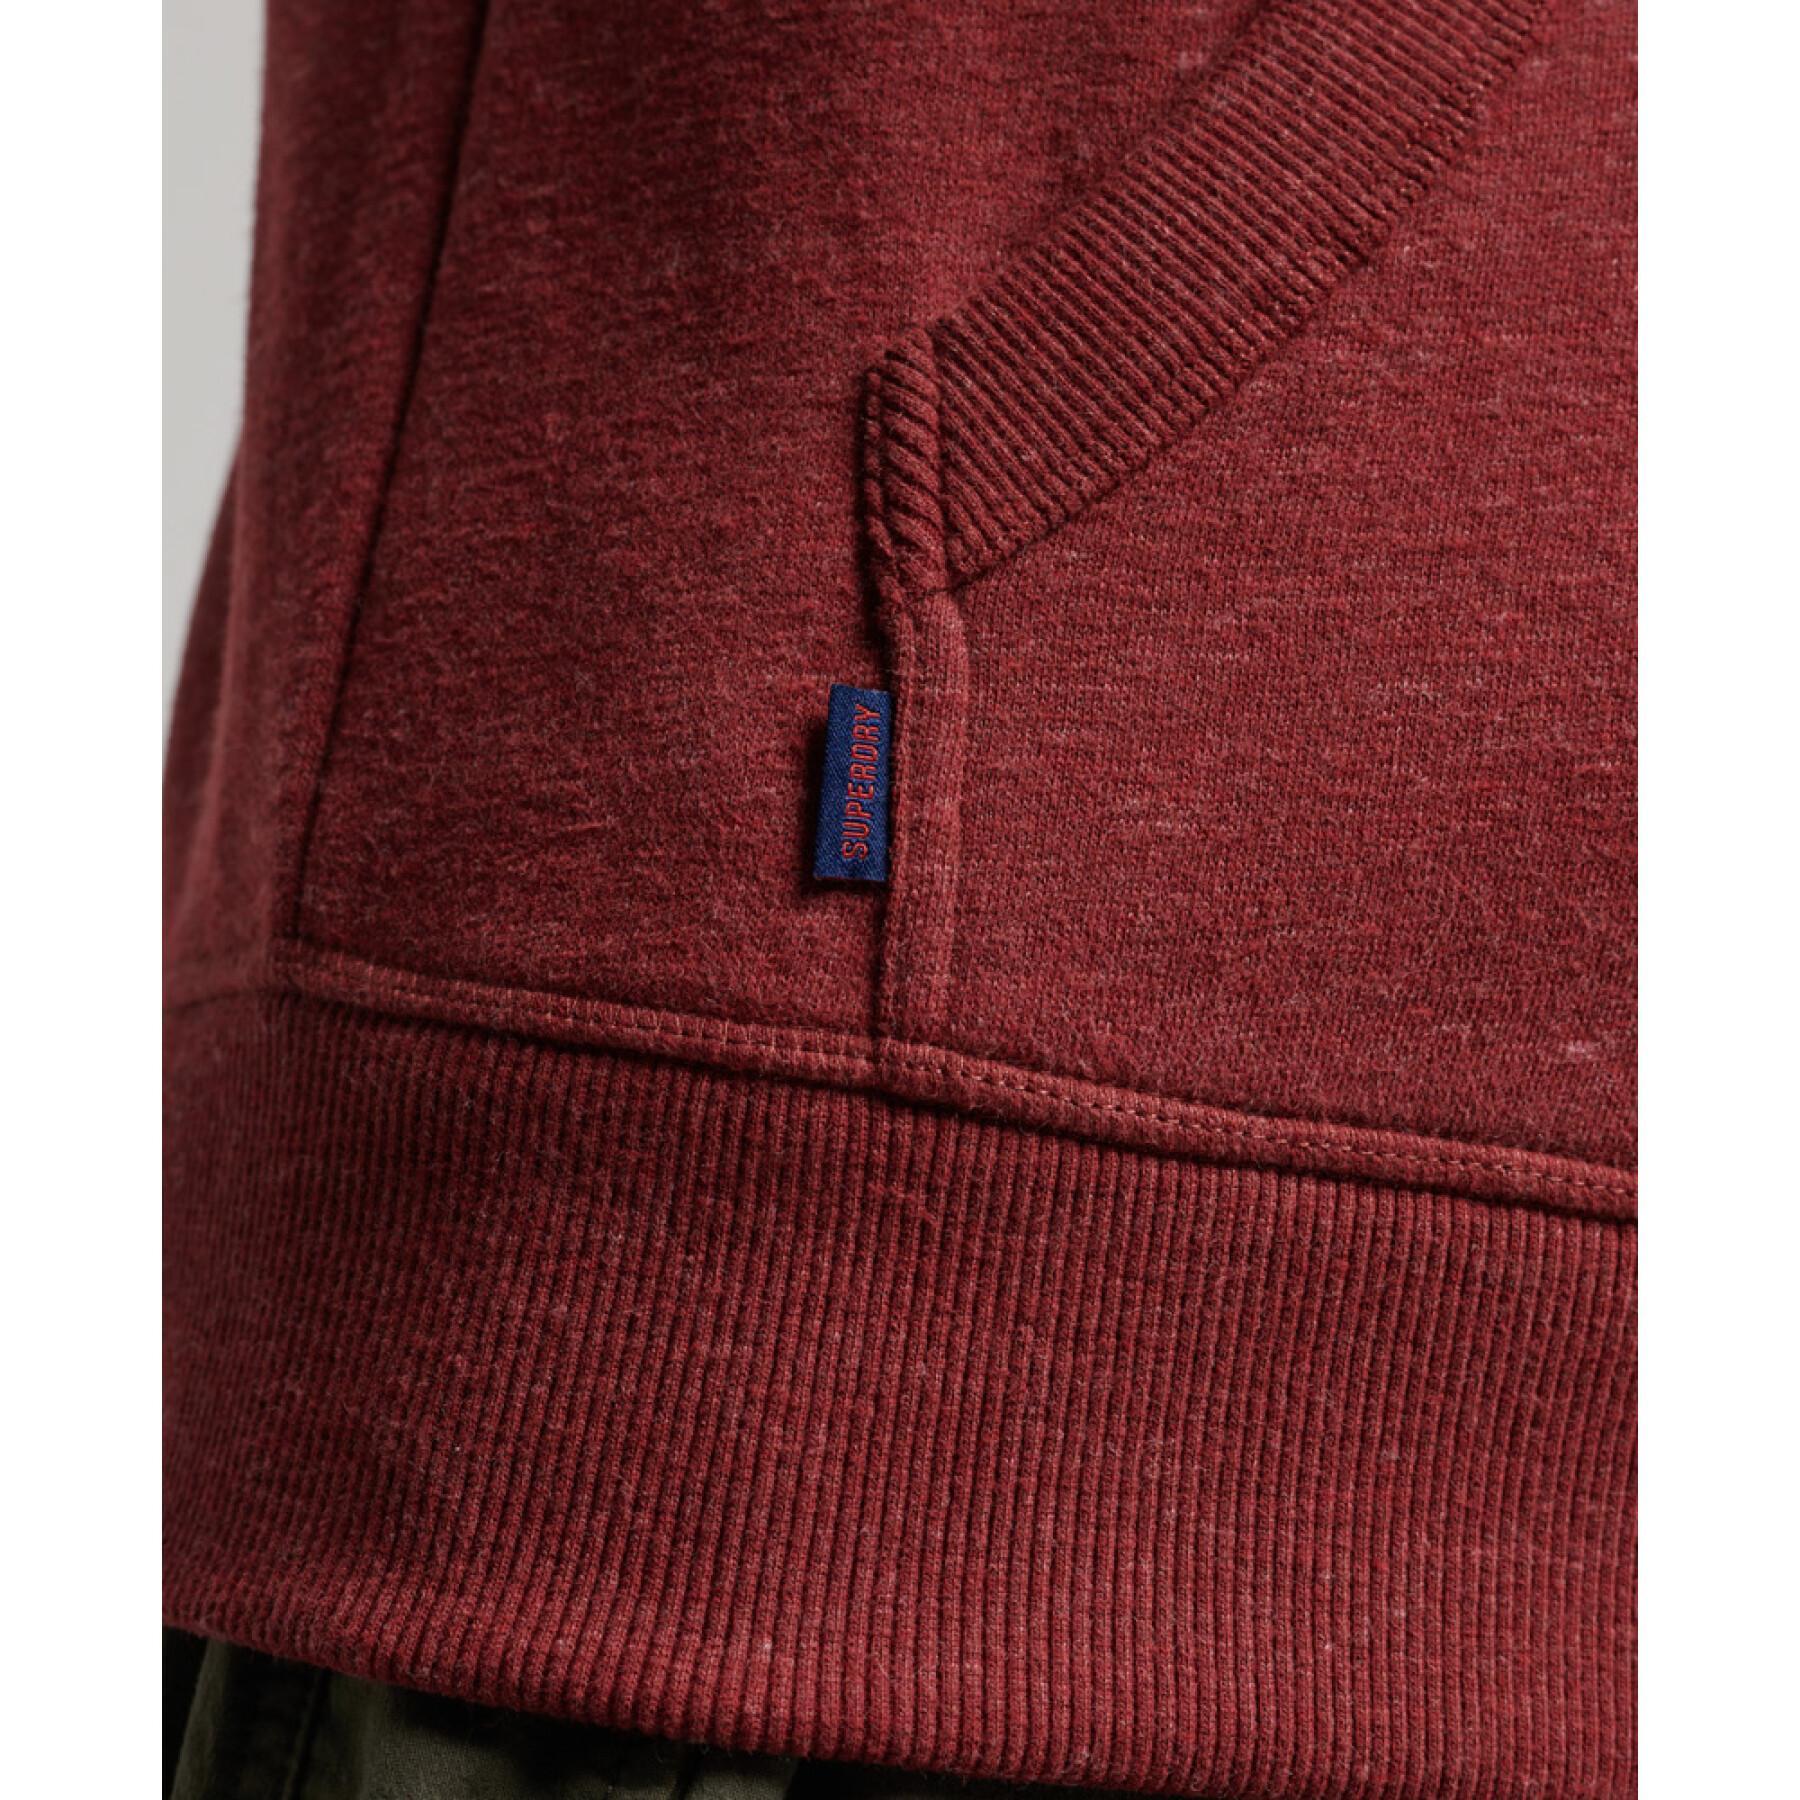 Sweatshirt à capuche zippé et brodé Superdry Vintage Logo